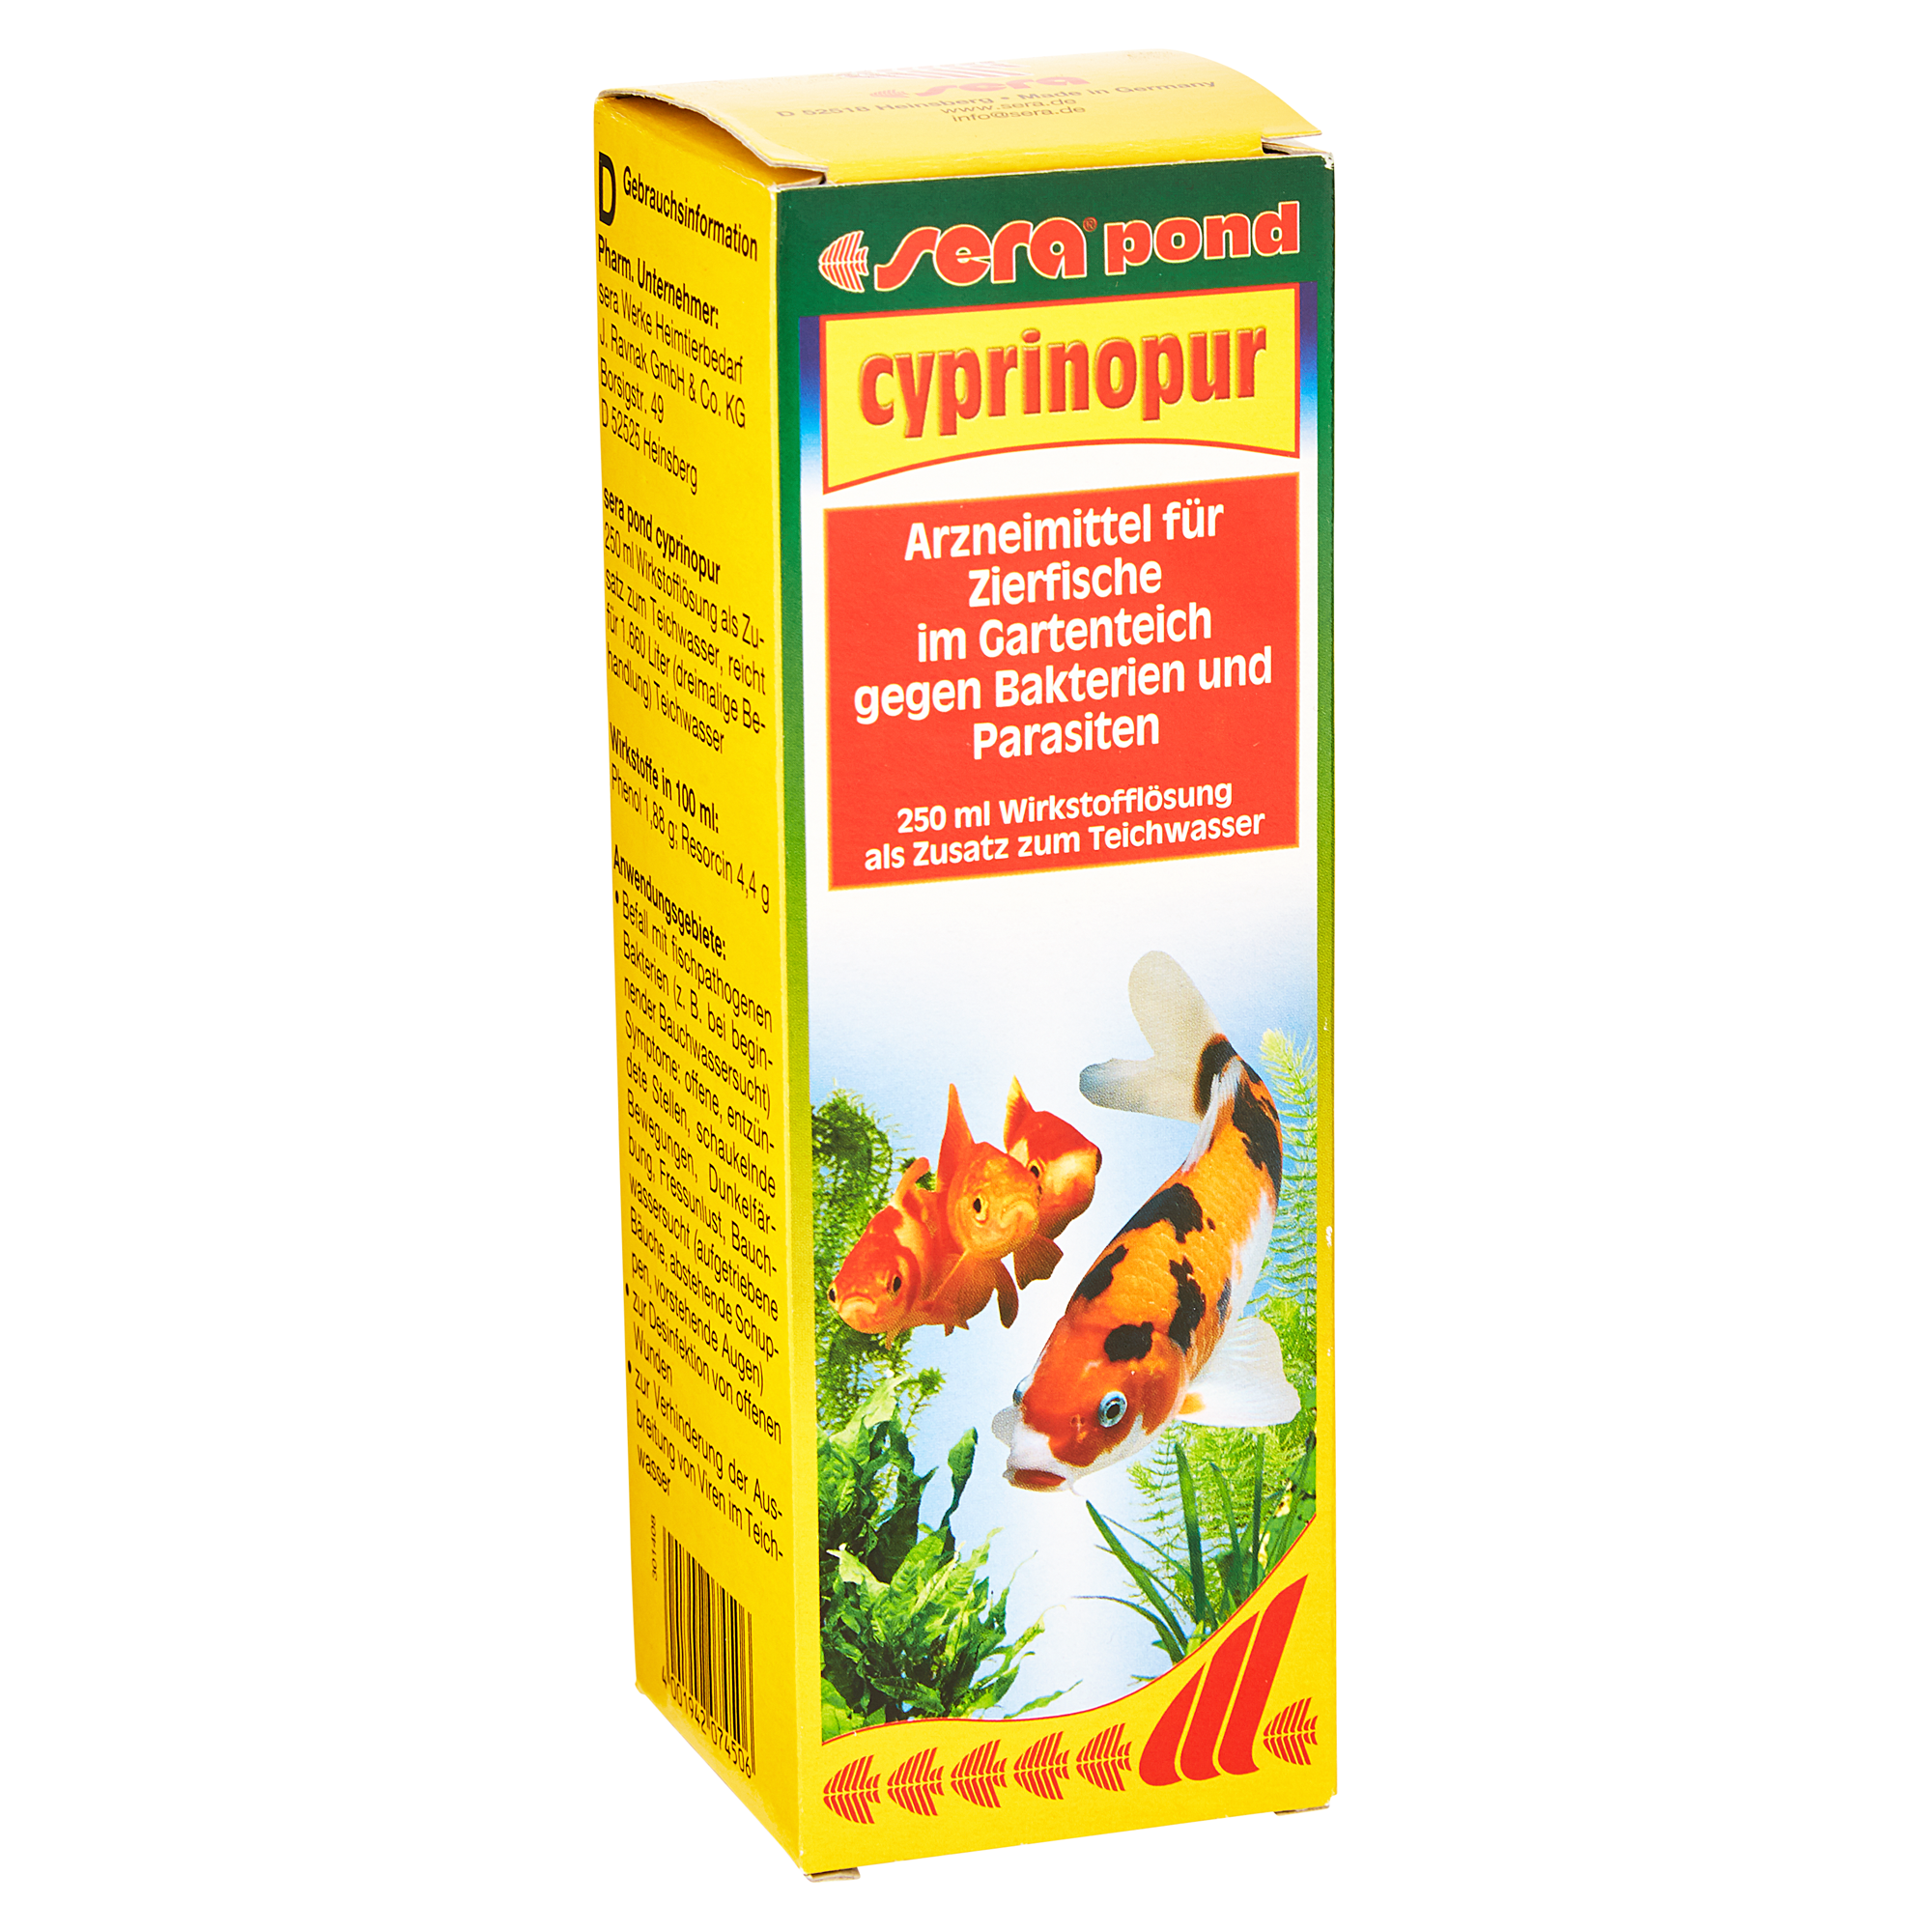 Arzneimittel für Zierfische "sera pond" Cyprinopur 250 ml + product picture